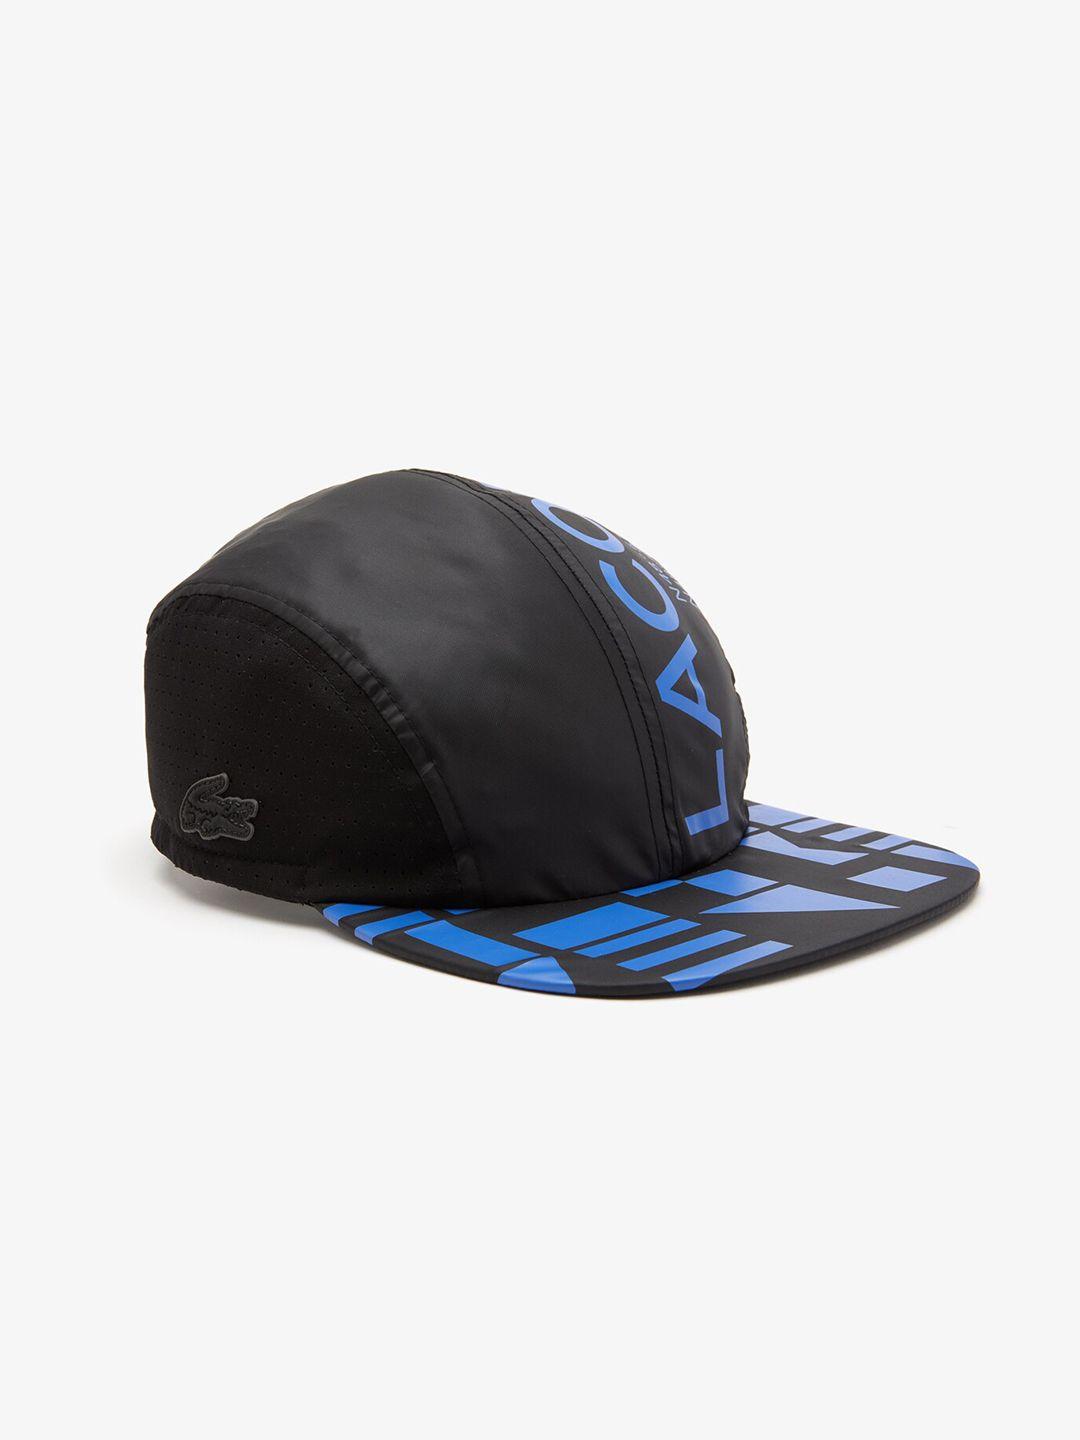 lacoste-men-sport-foldable-visor-baseball-cap